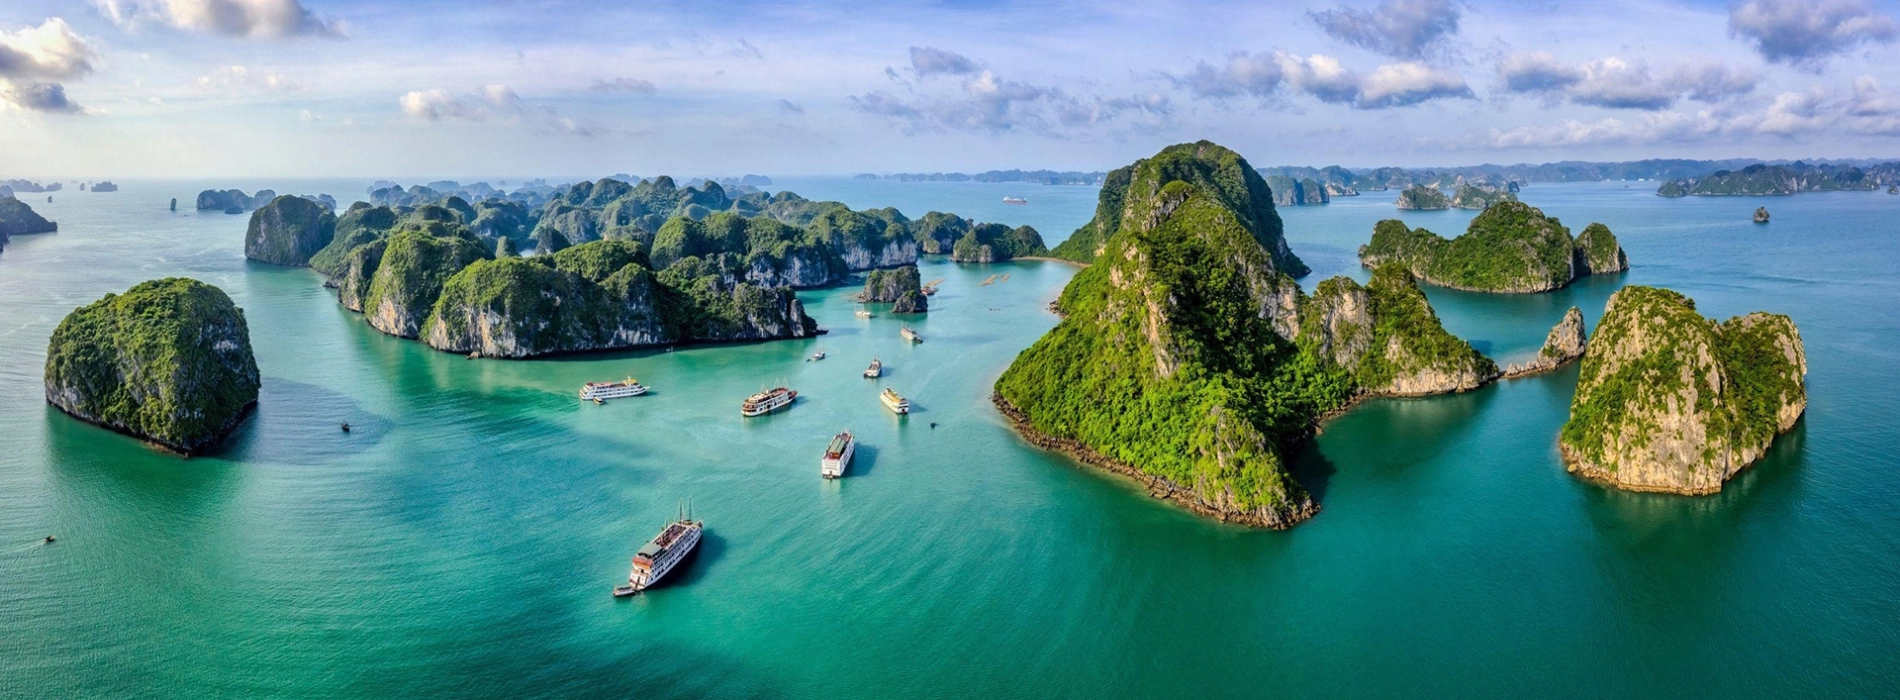 Top 8 Attractions in Northern Vietnam